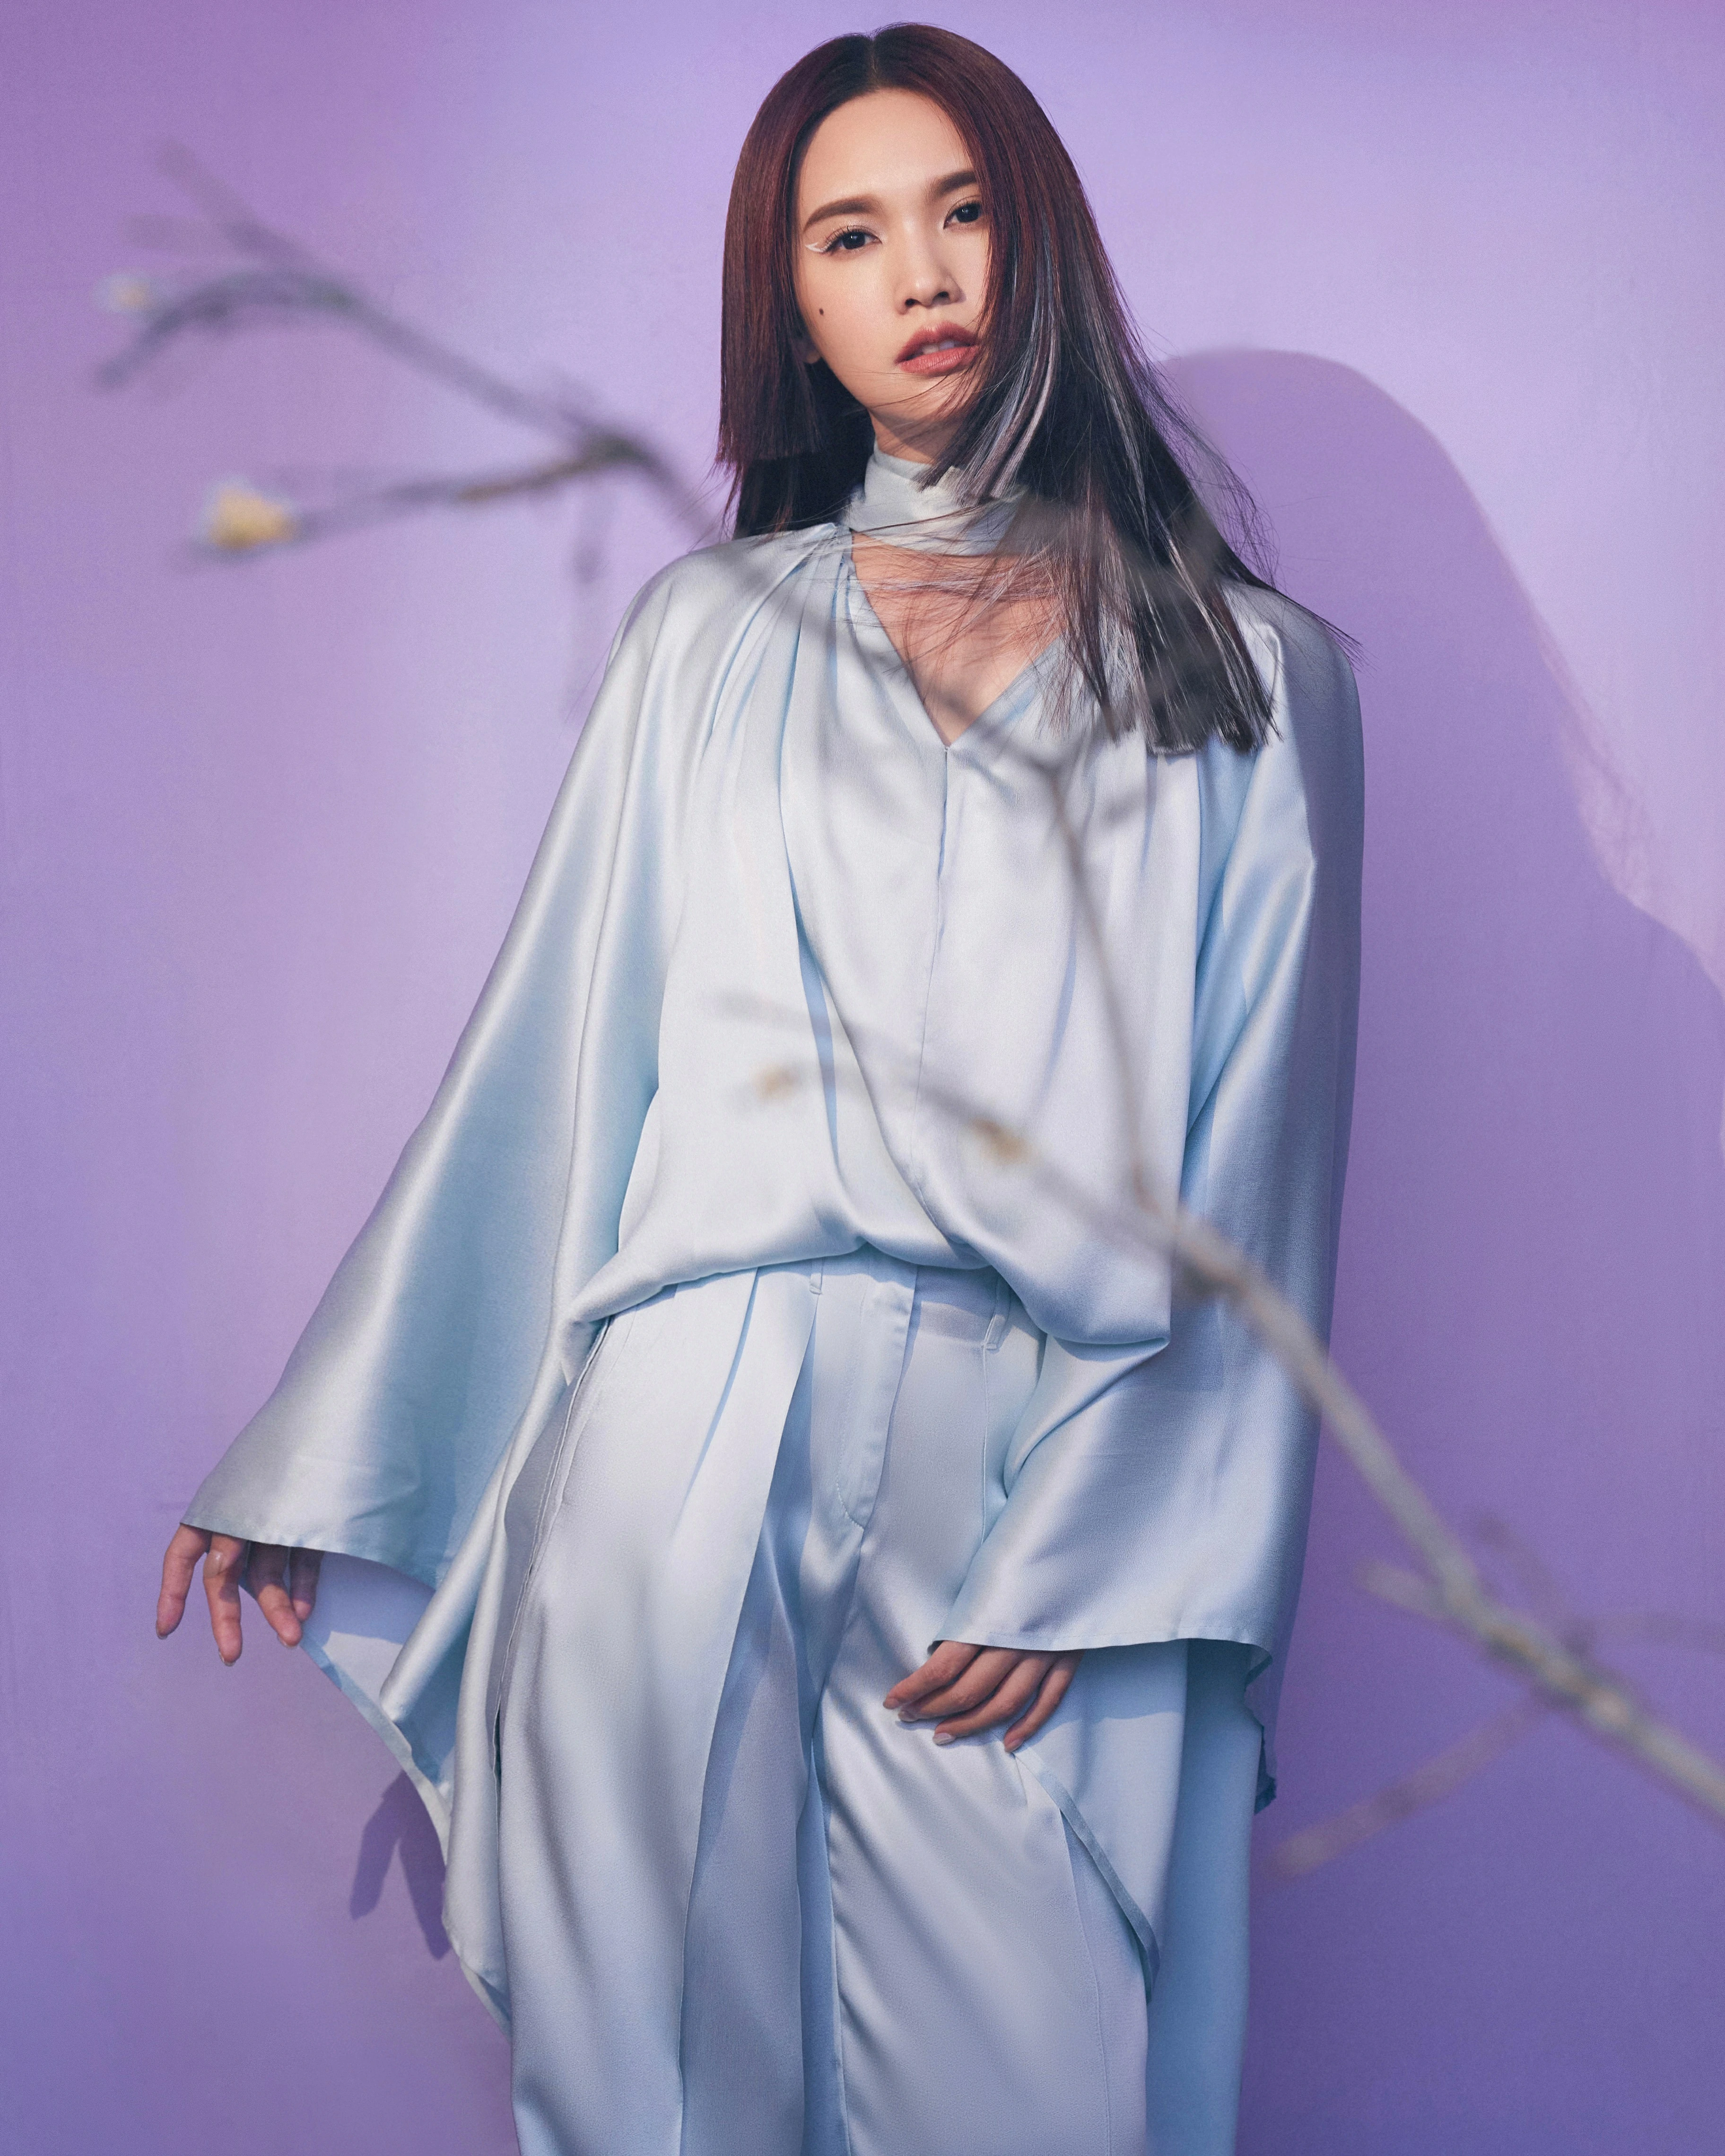 杨丞琳亮相本周《闪光的乐队》 挑染公主切造型带来《天堂》舞台,4